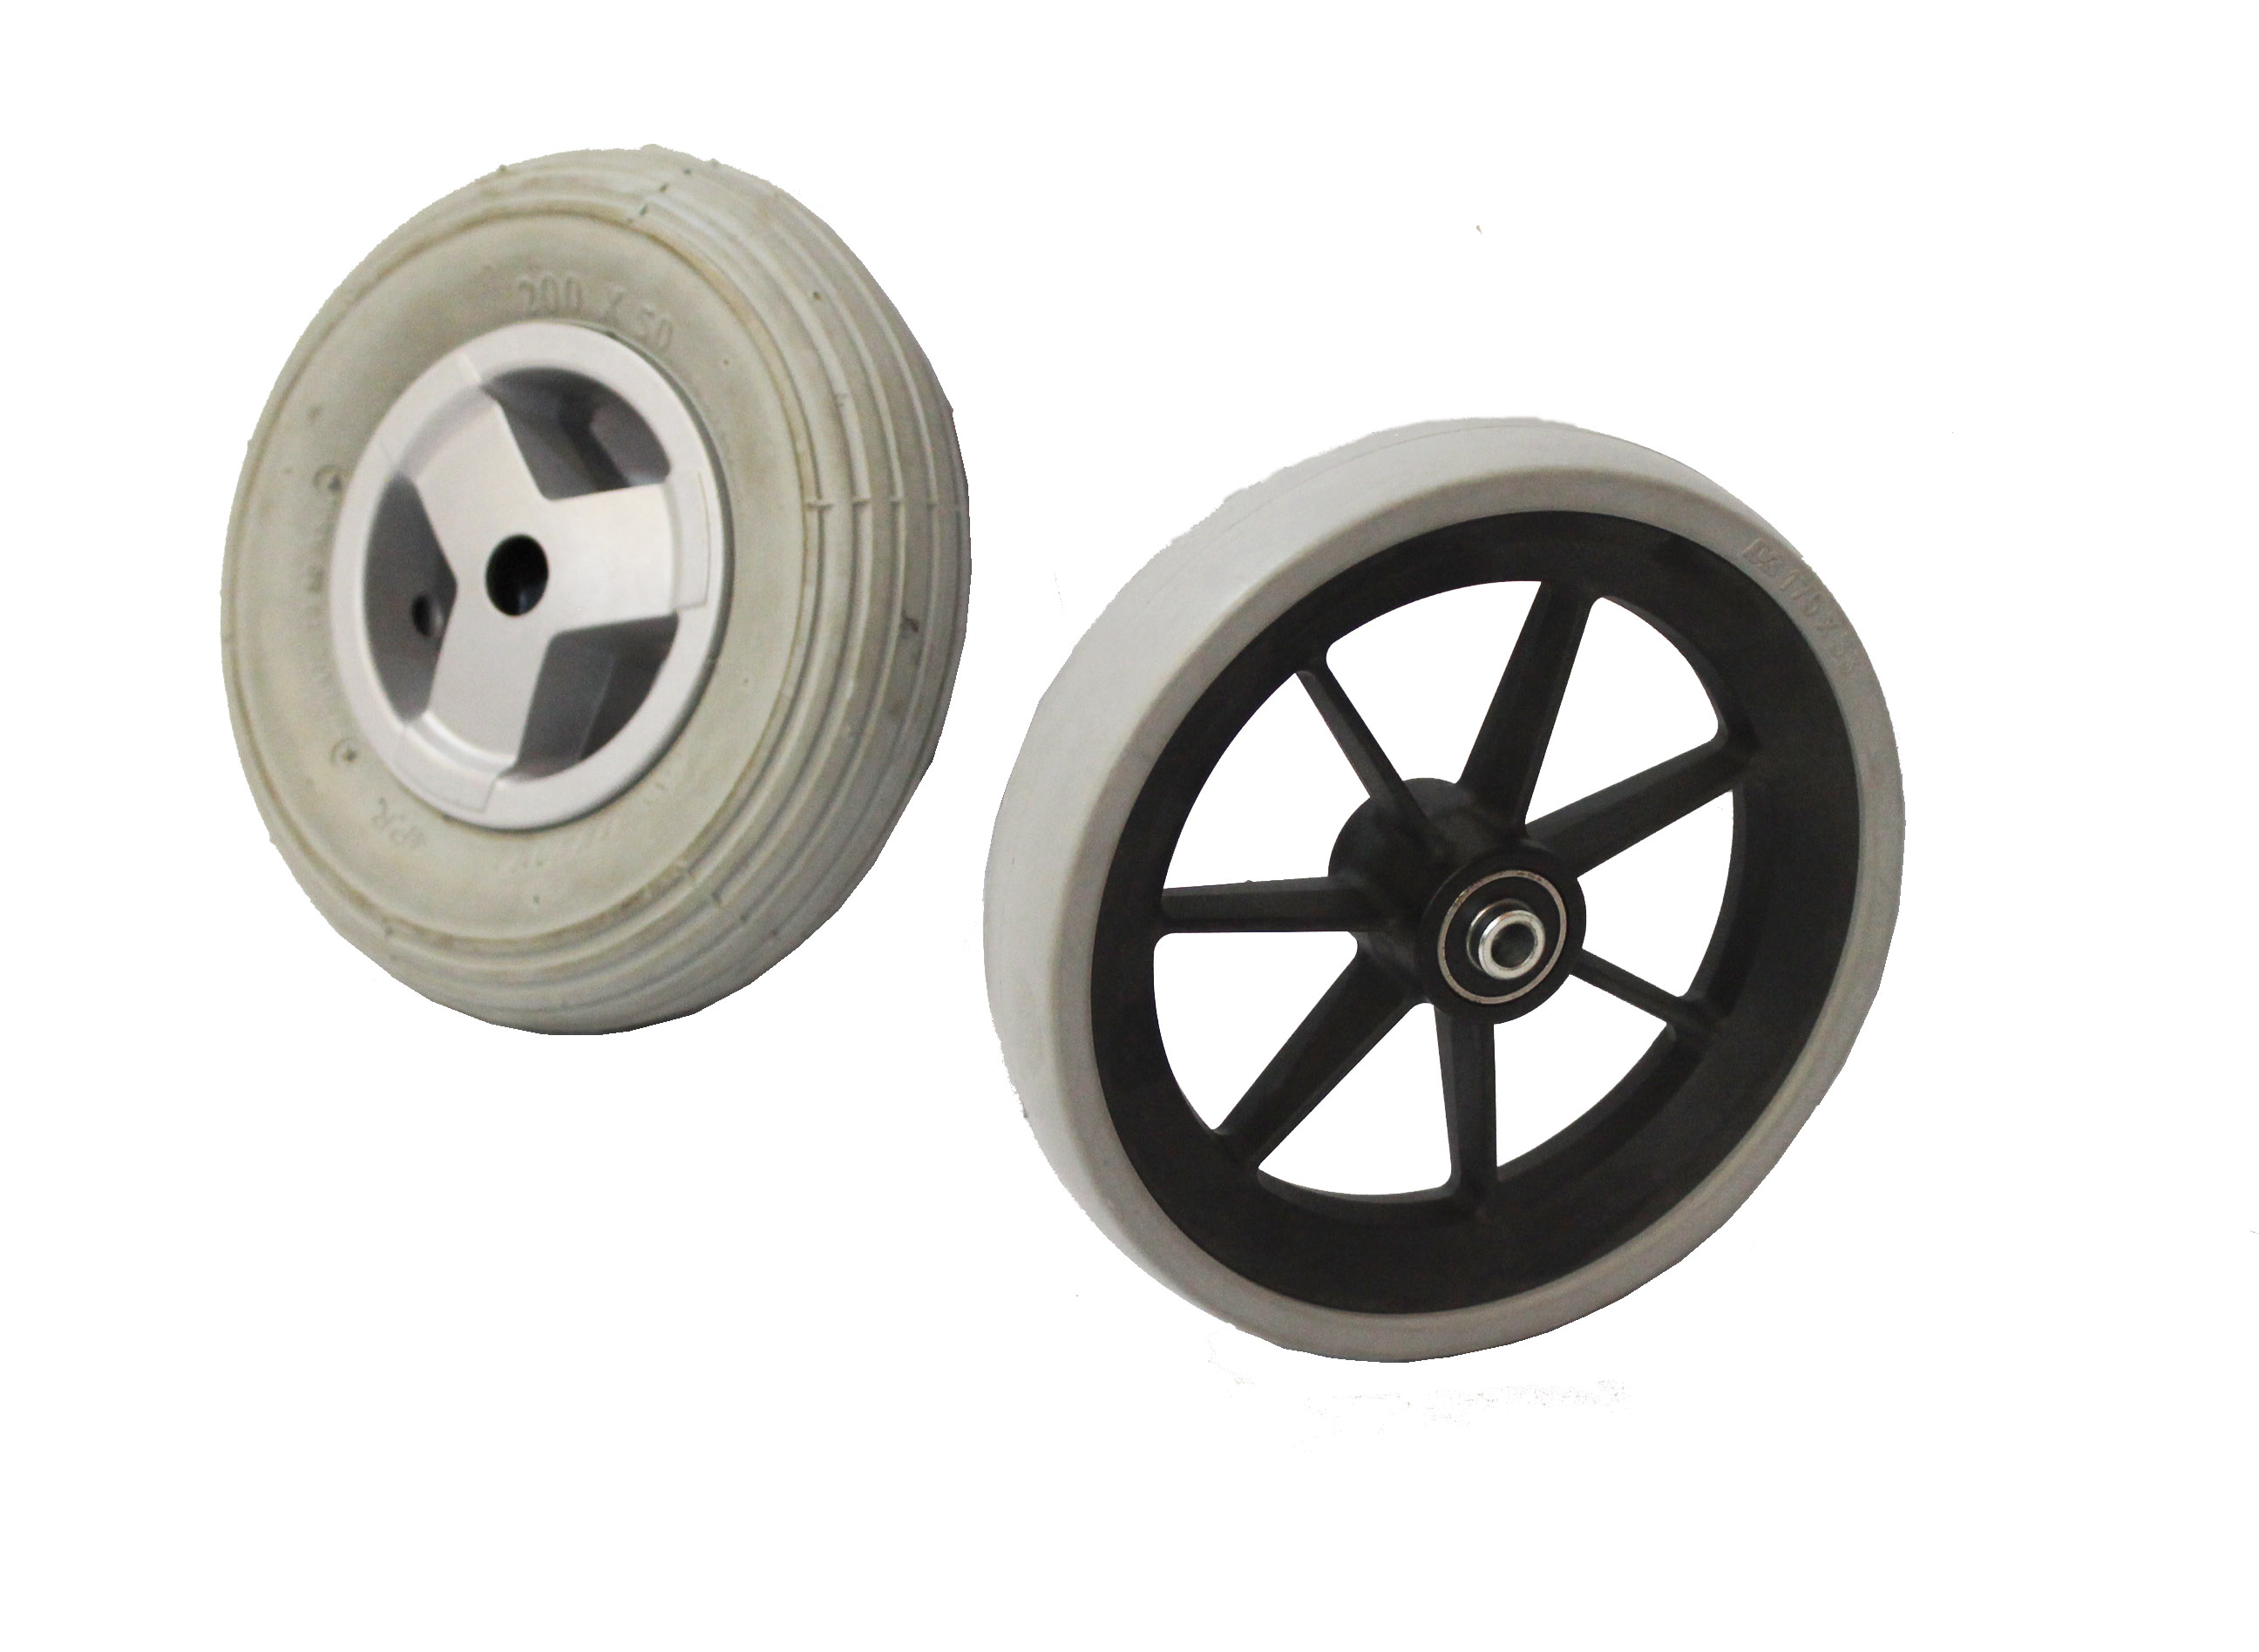 pneus sem ar Tweel: pneu da roda de carrinho de mão: 400-8 4pr pneu carrinho de mão